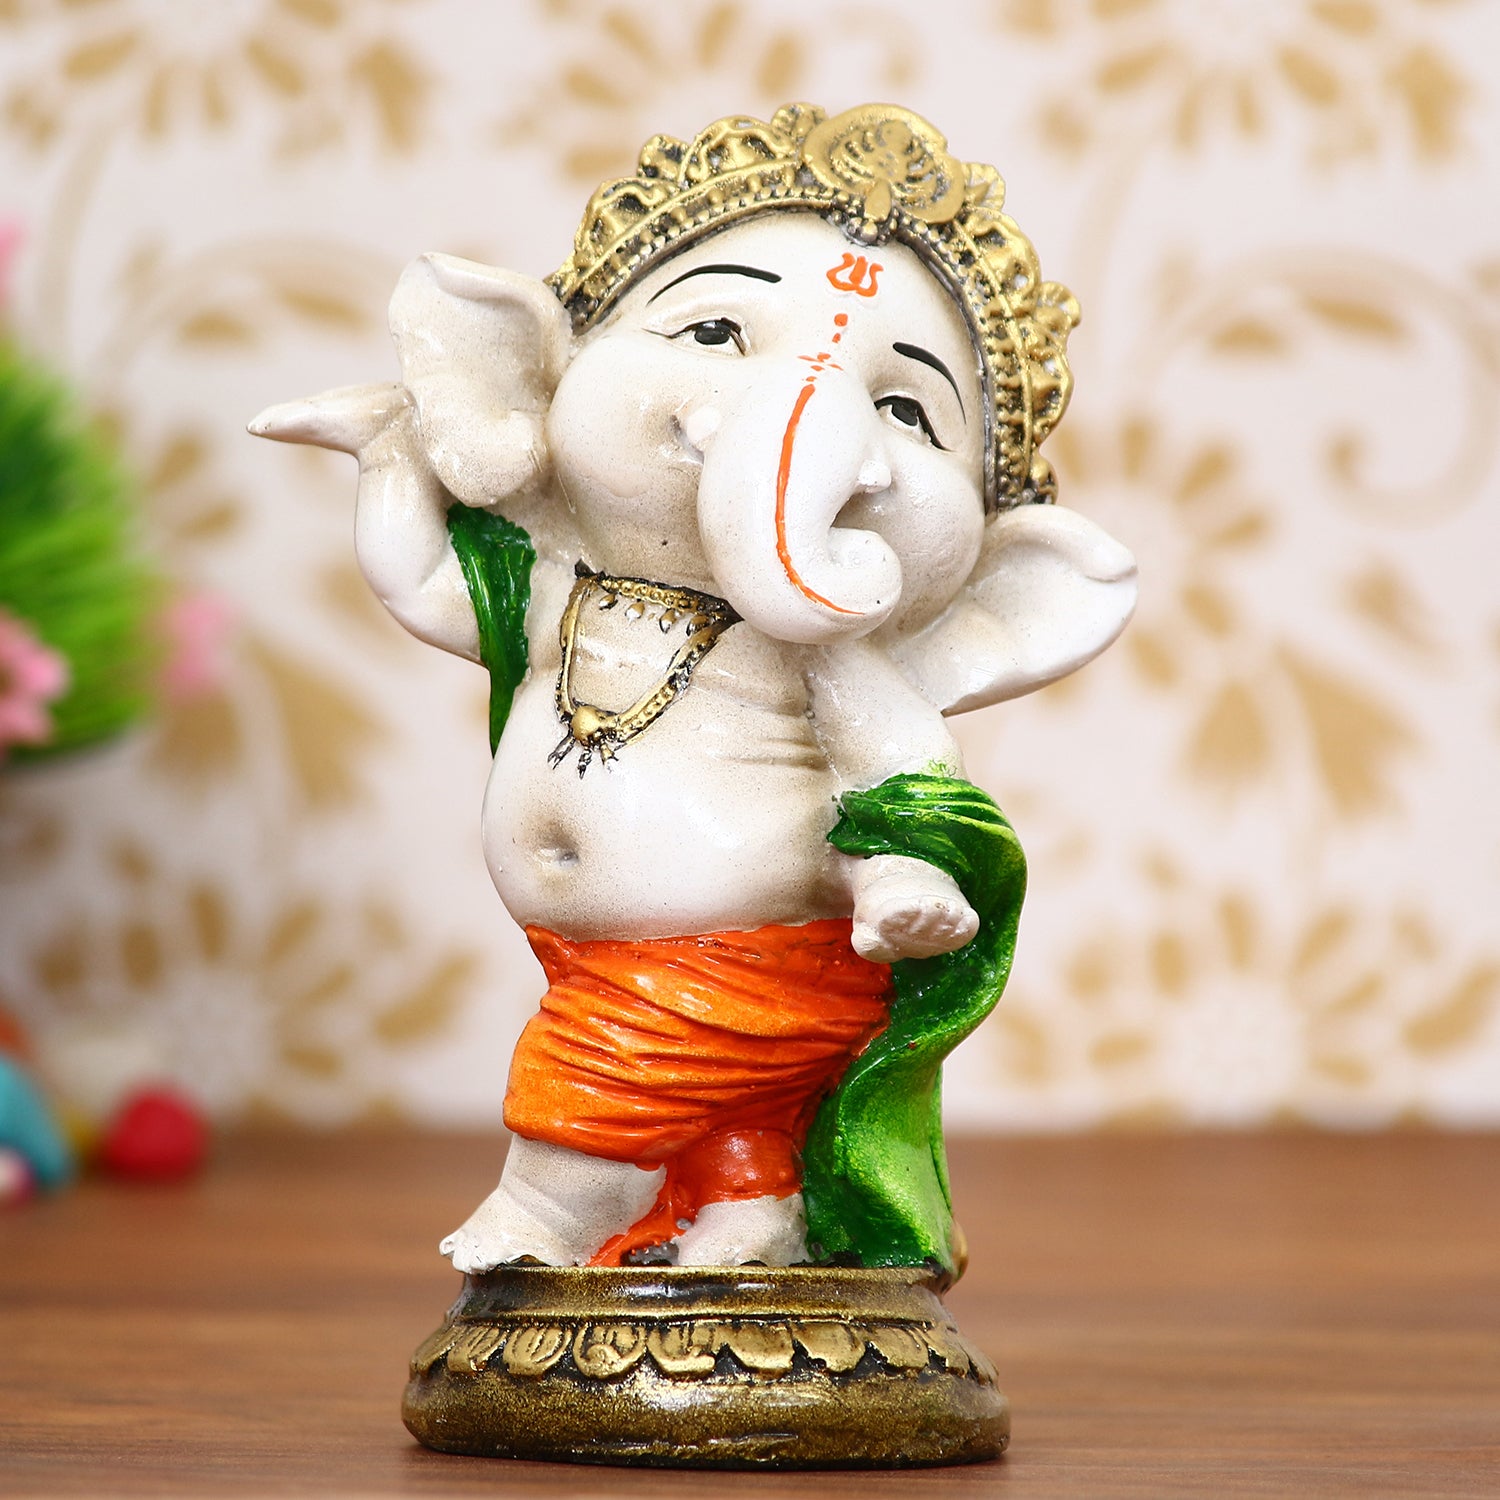 Lord Ganesha Idol In Dancing Avatar Decorative Showpiece